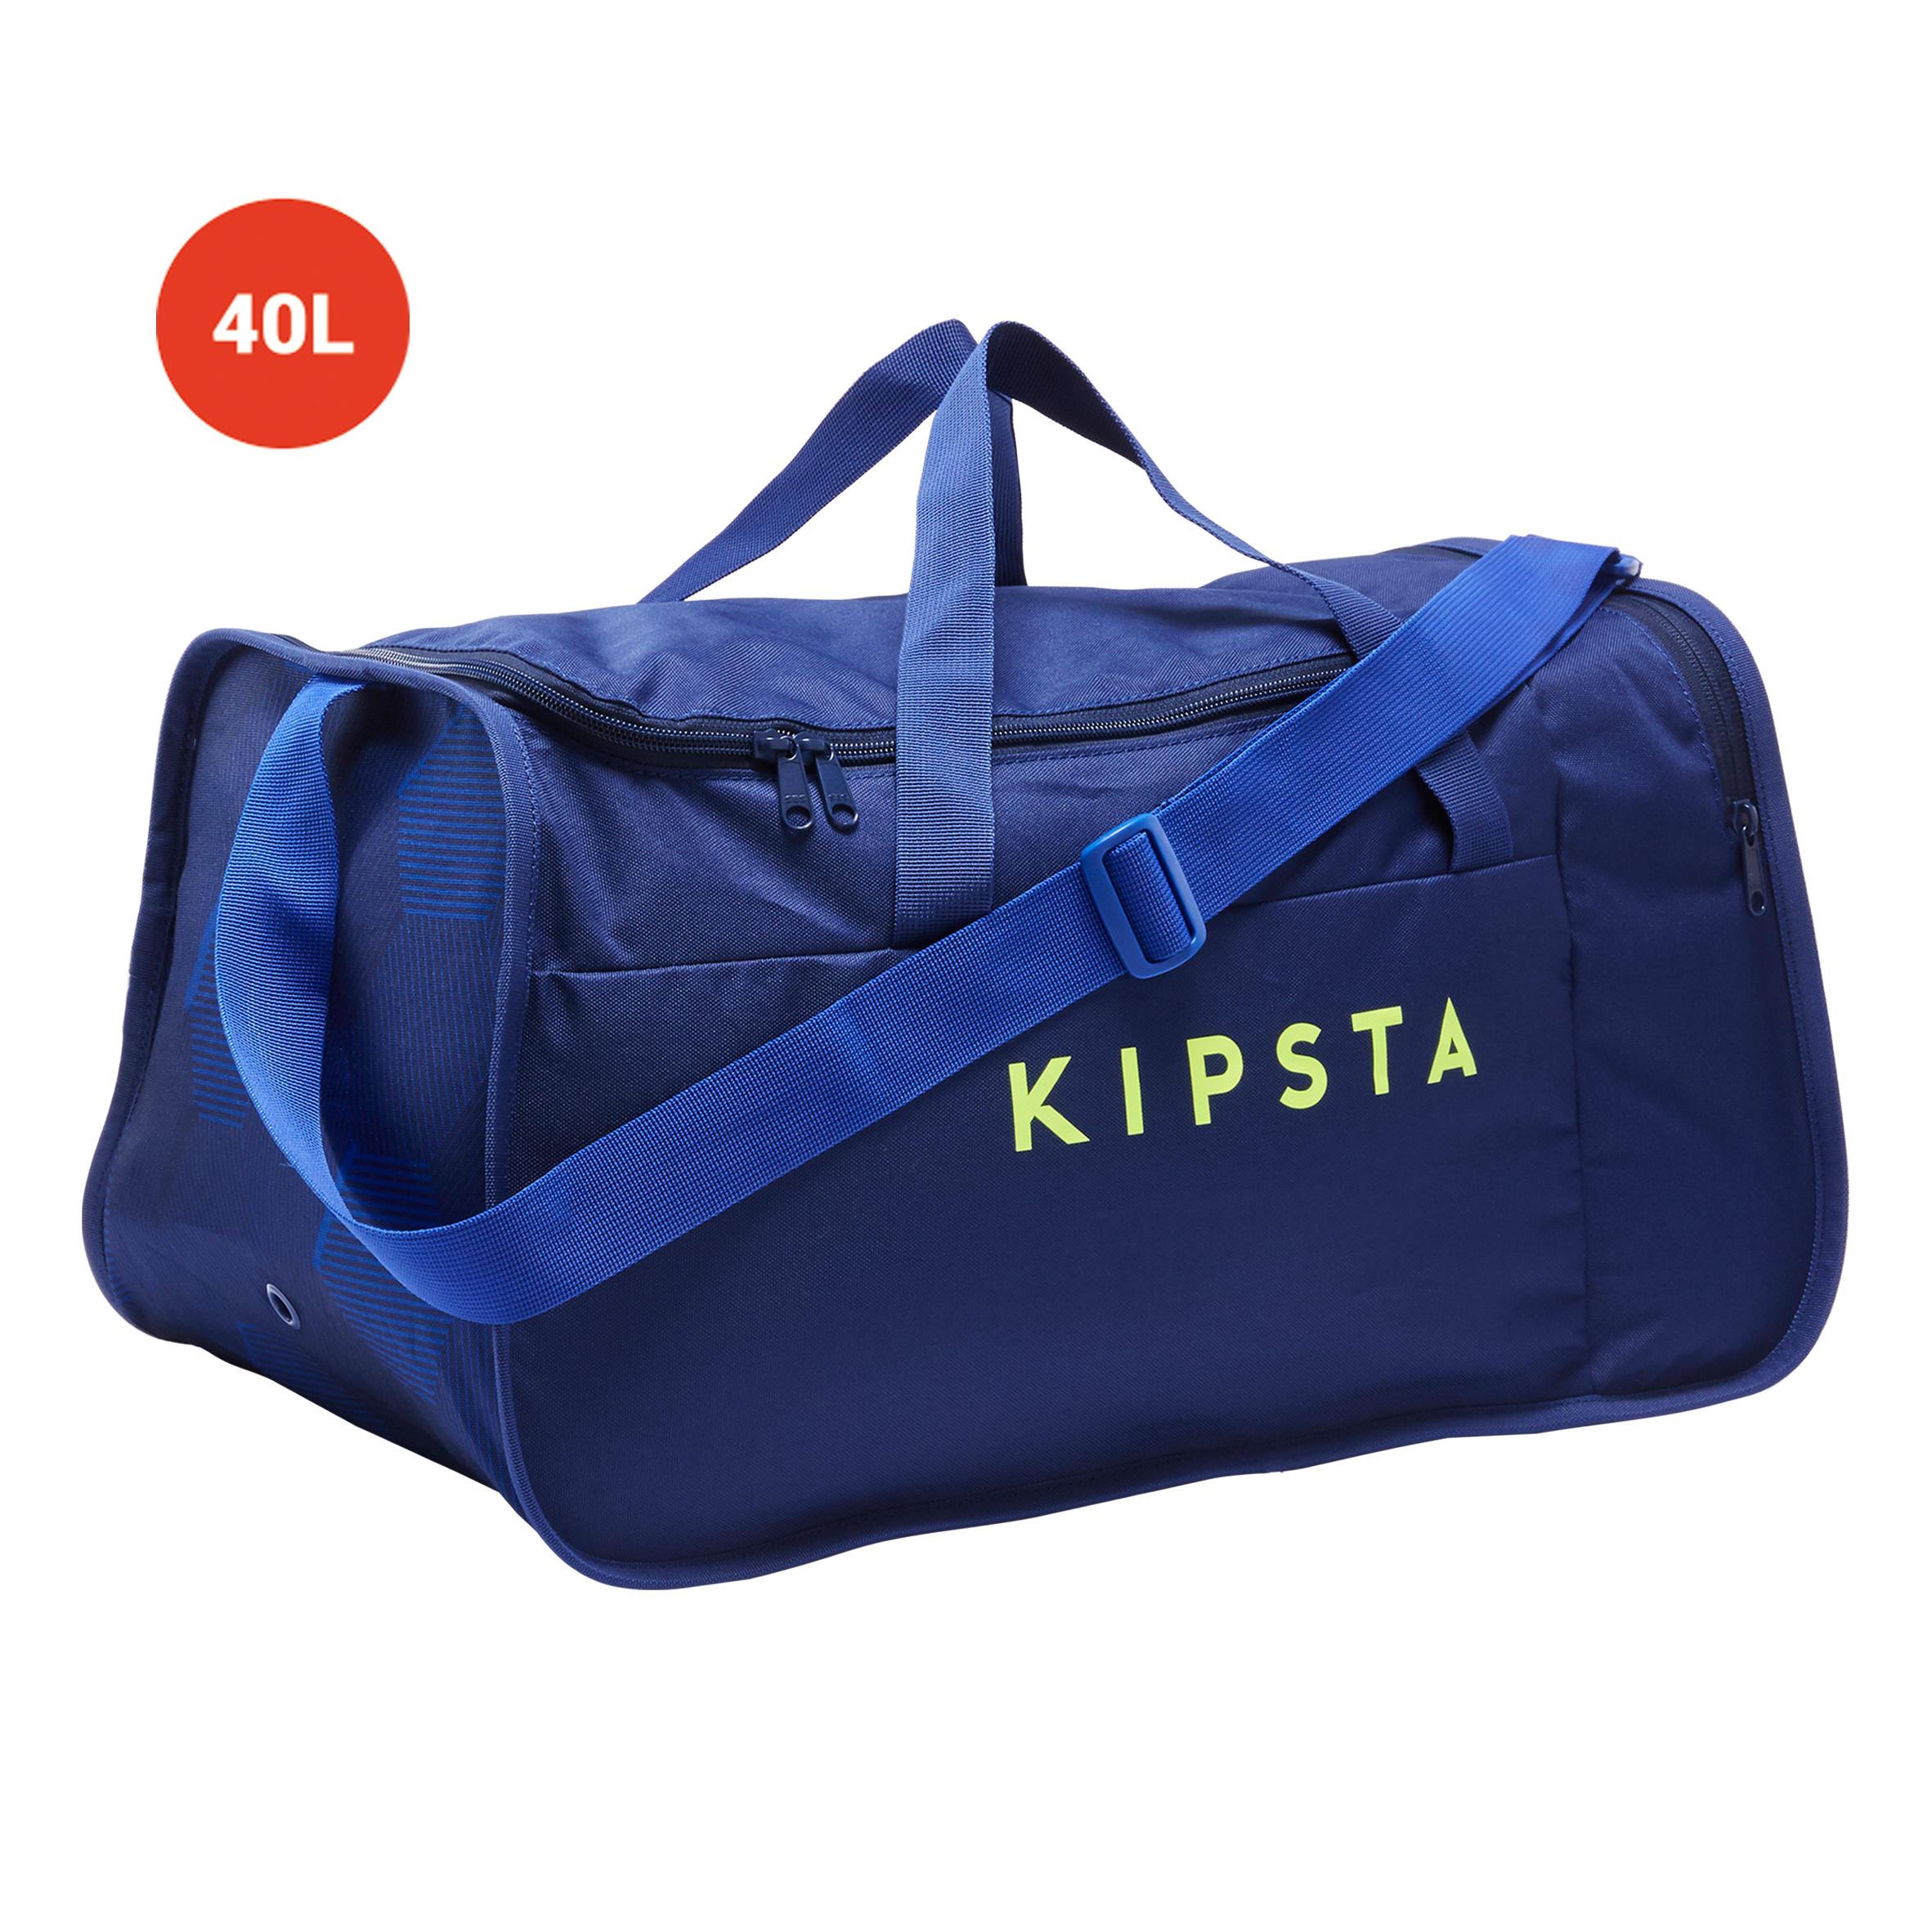 [ด่วน!! โปรโมชั่นมีจำนวนจำกัด] กระเป๋ากีฬารุ่น KIPOCKET ความจุ 40 ลิตร (สีน้ำเงิน/เหลือง) สำหรับ ฟุตบอล